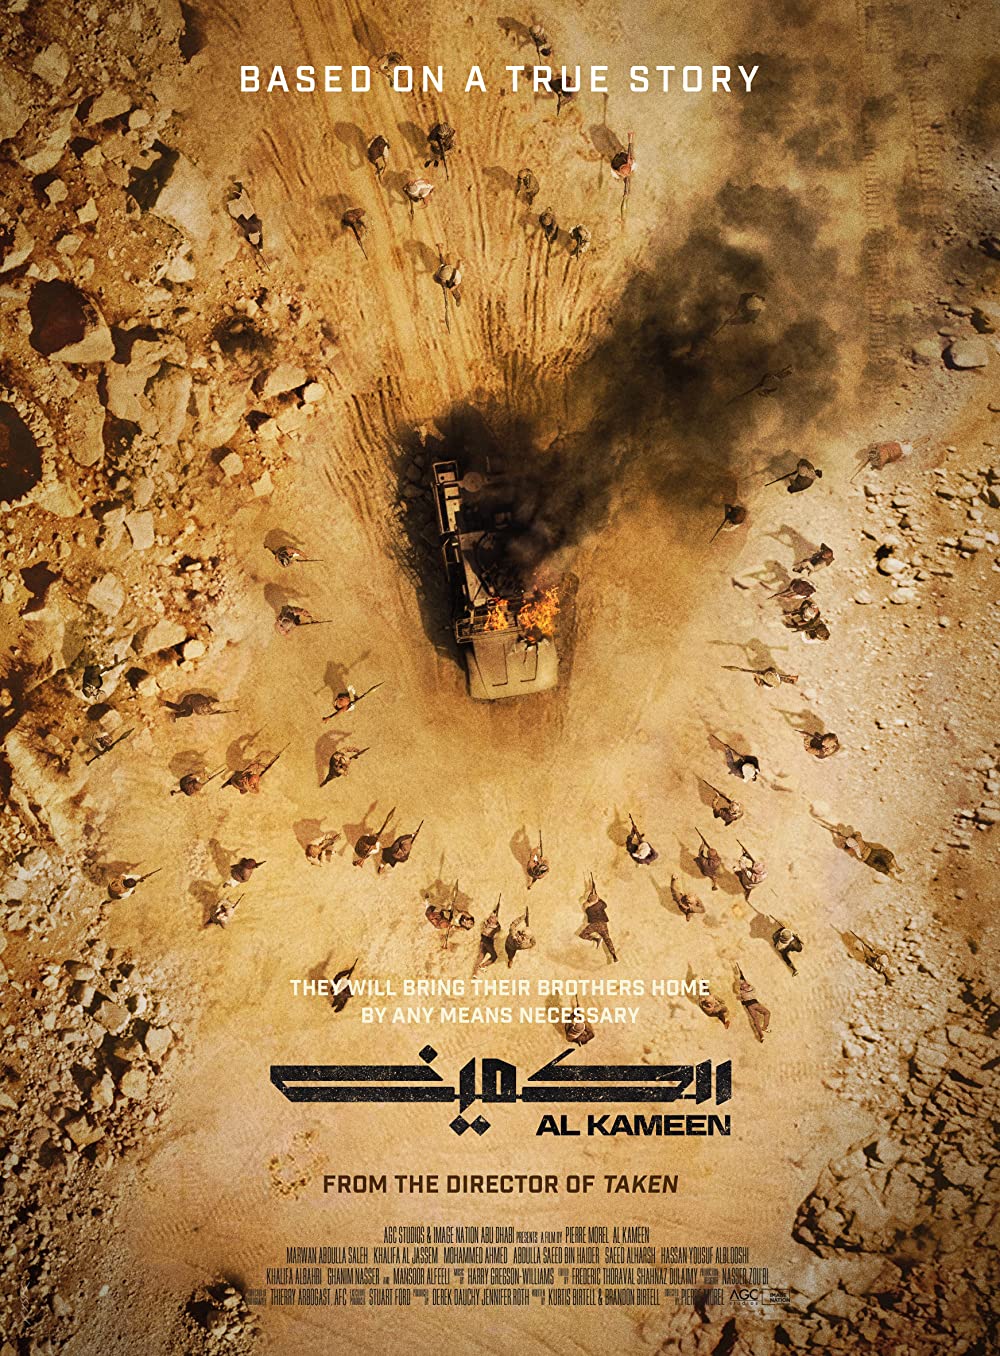 Cuộc Phục Kích – Al Kameen (The Ambush)